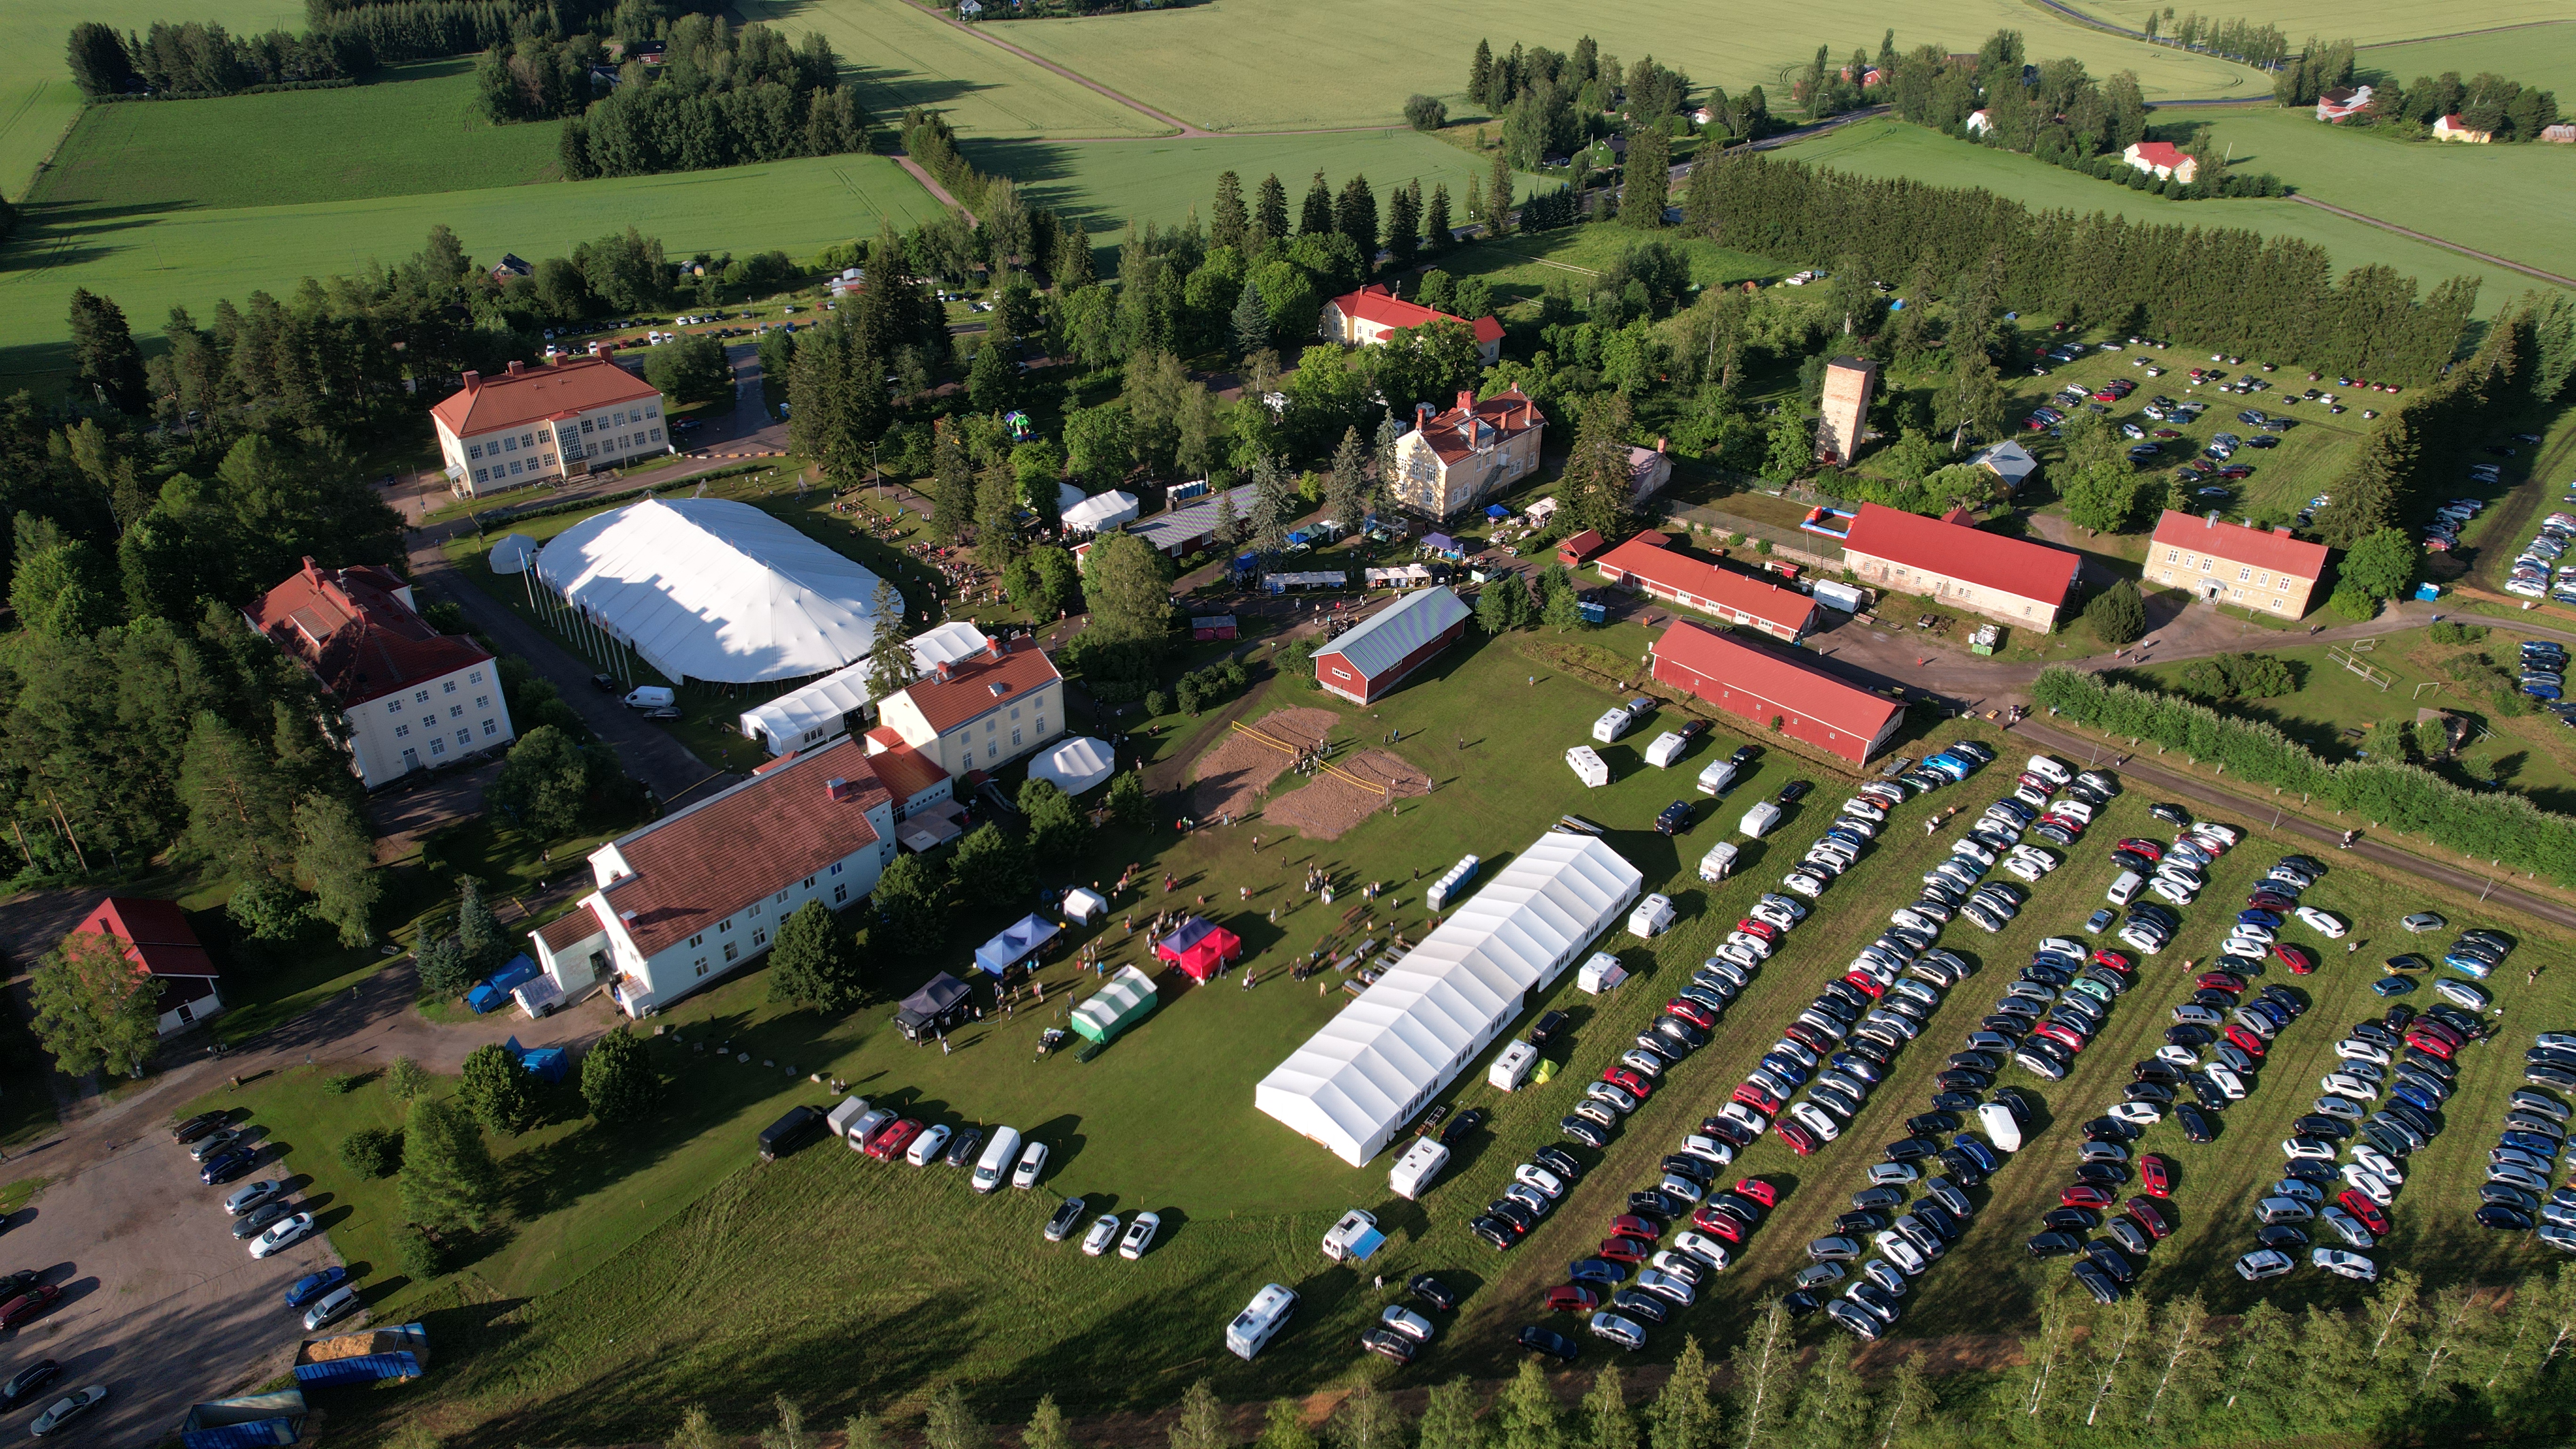 Kansanlähetyspäivien parkkitilat täyttyivät lauantaina. Kuva: Storyframe, Marianna Mäkiniemi